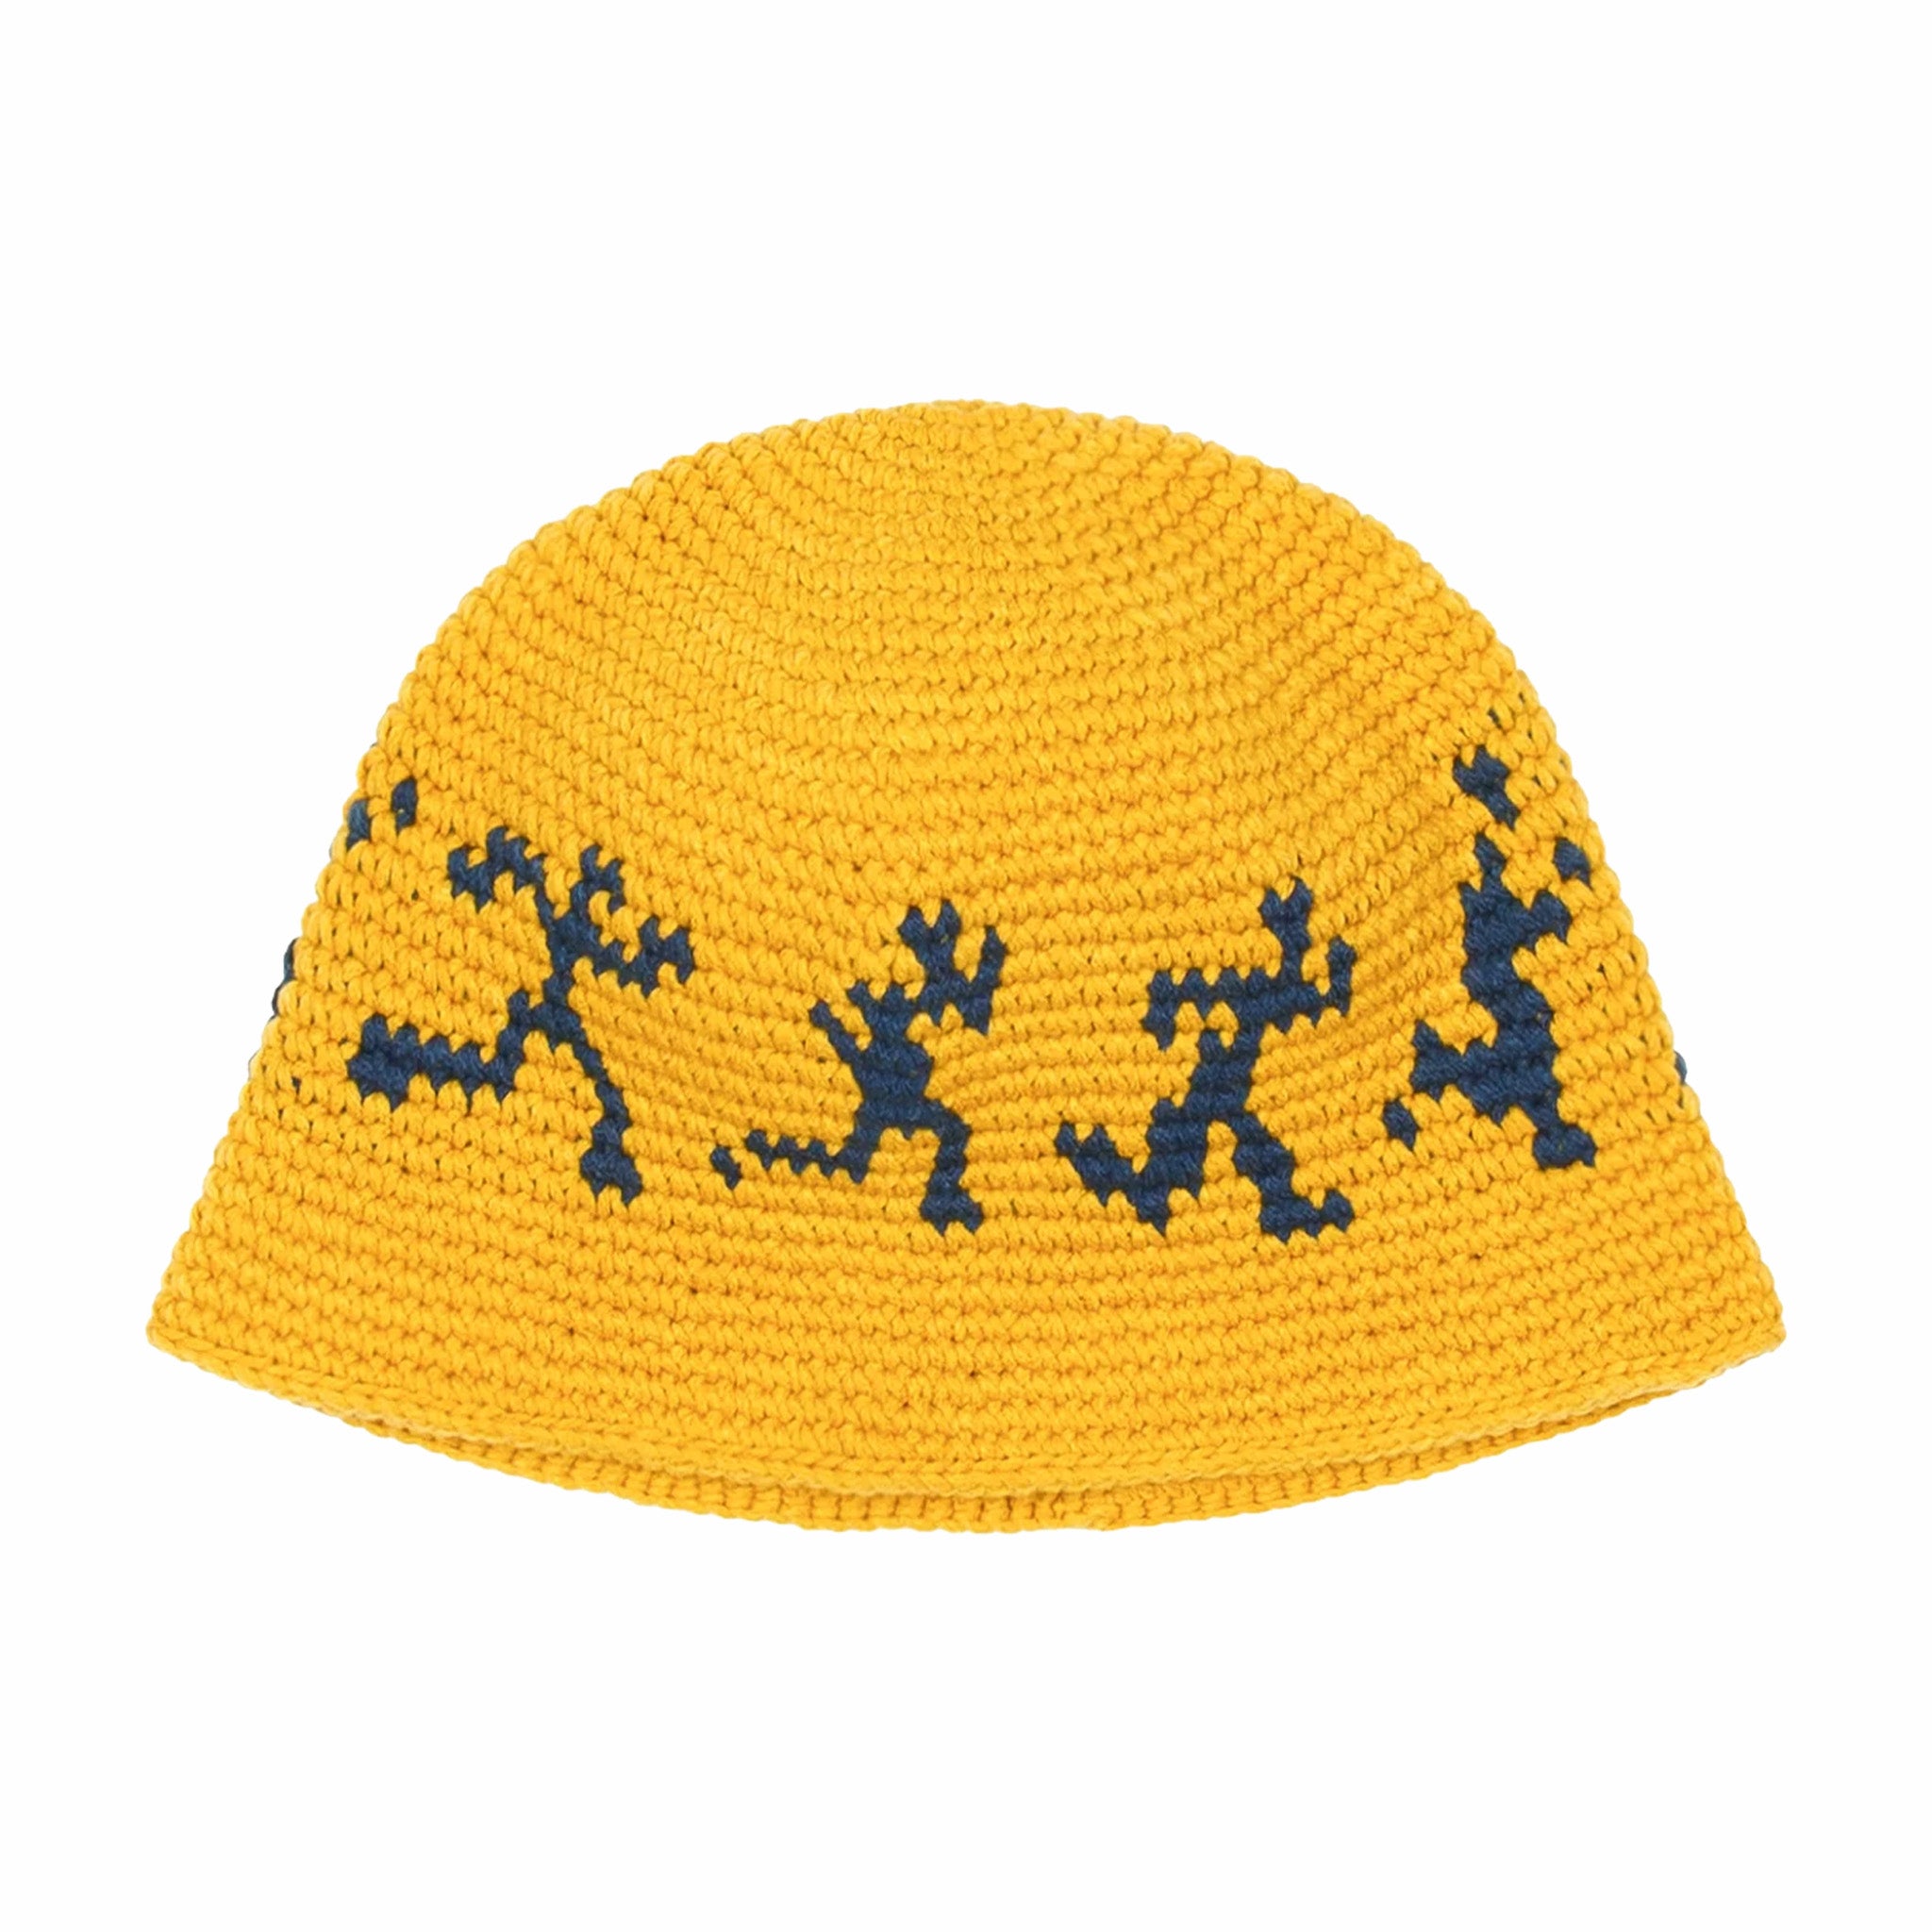 KidSUper Running Guys Crochet Hat (Golden) - August Shop